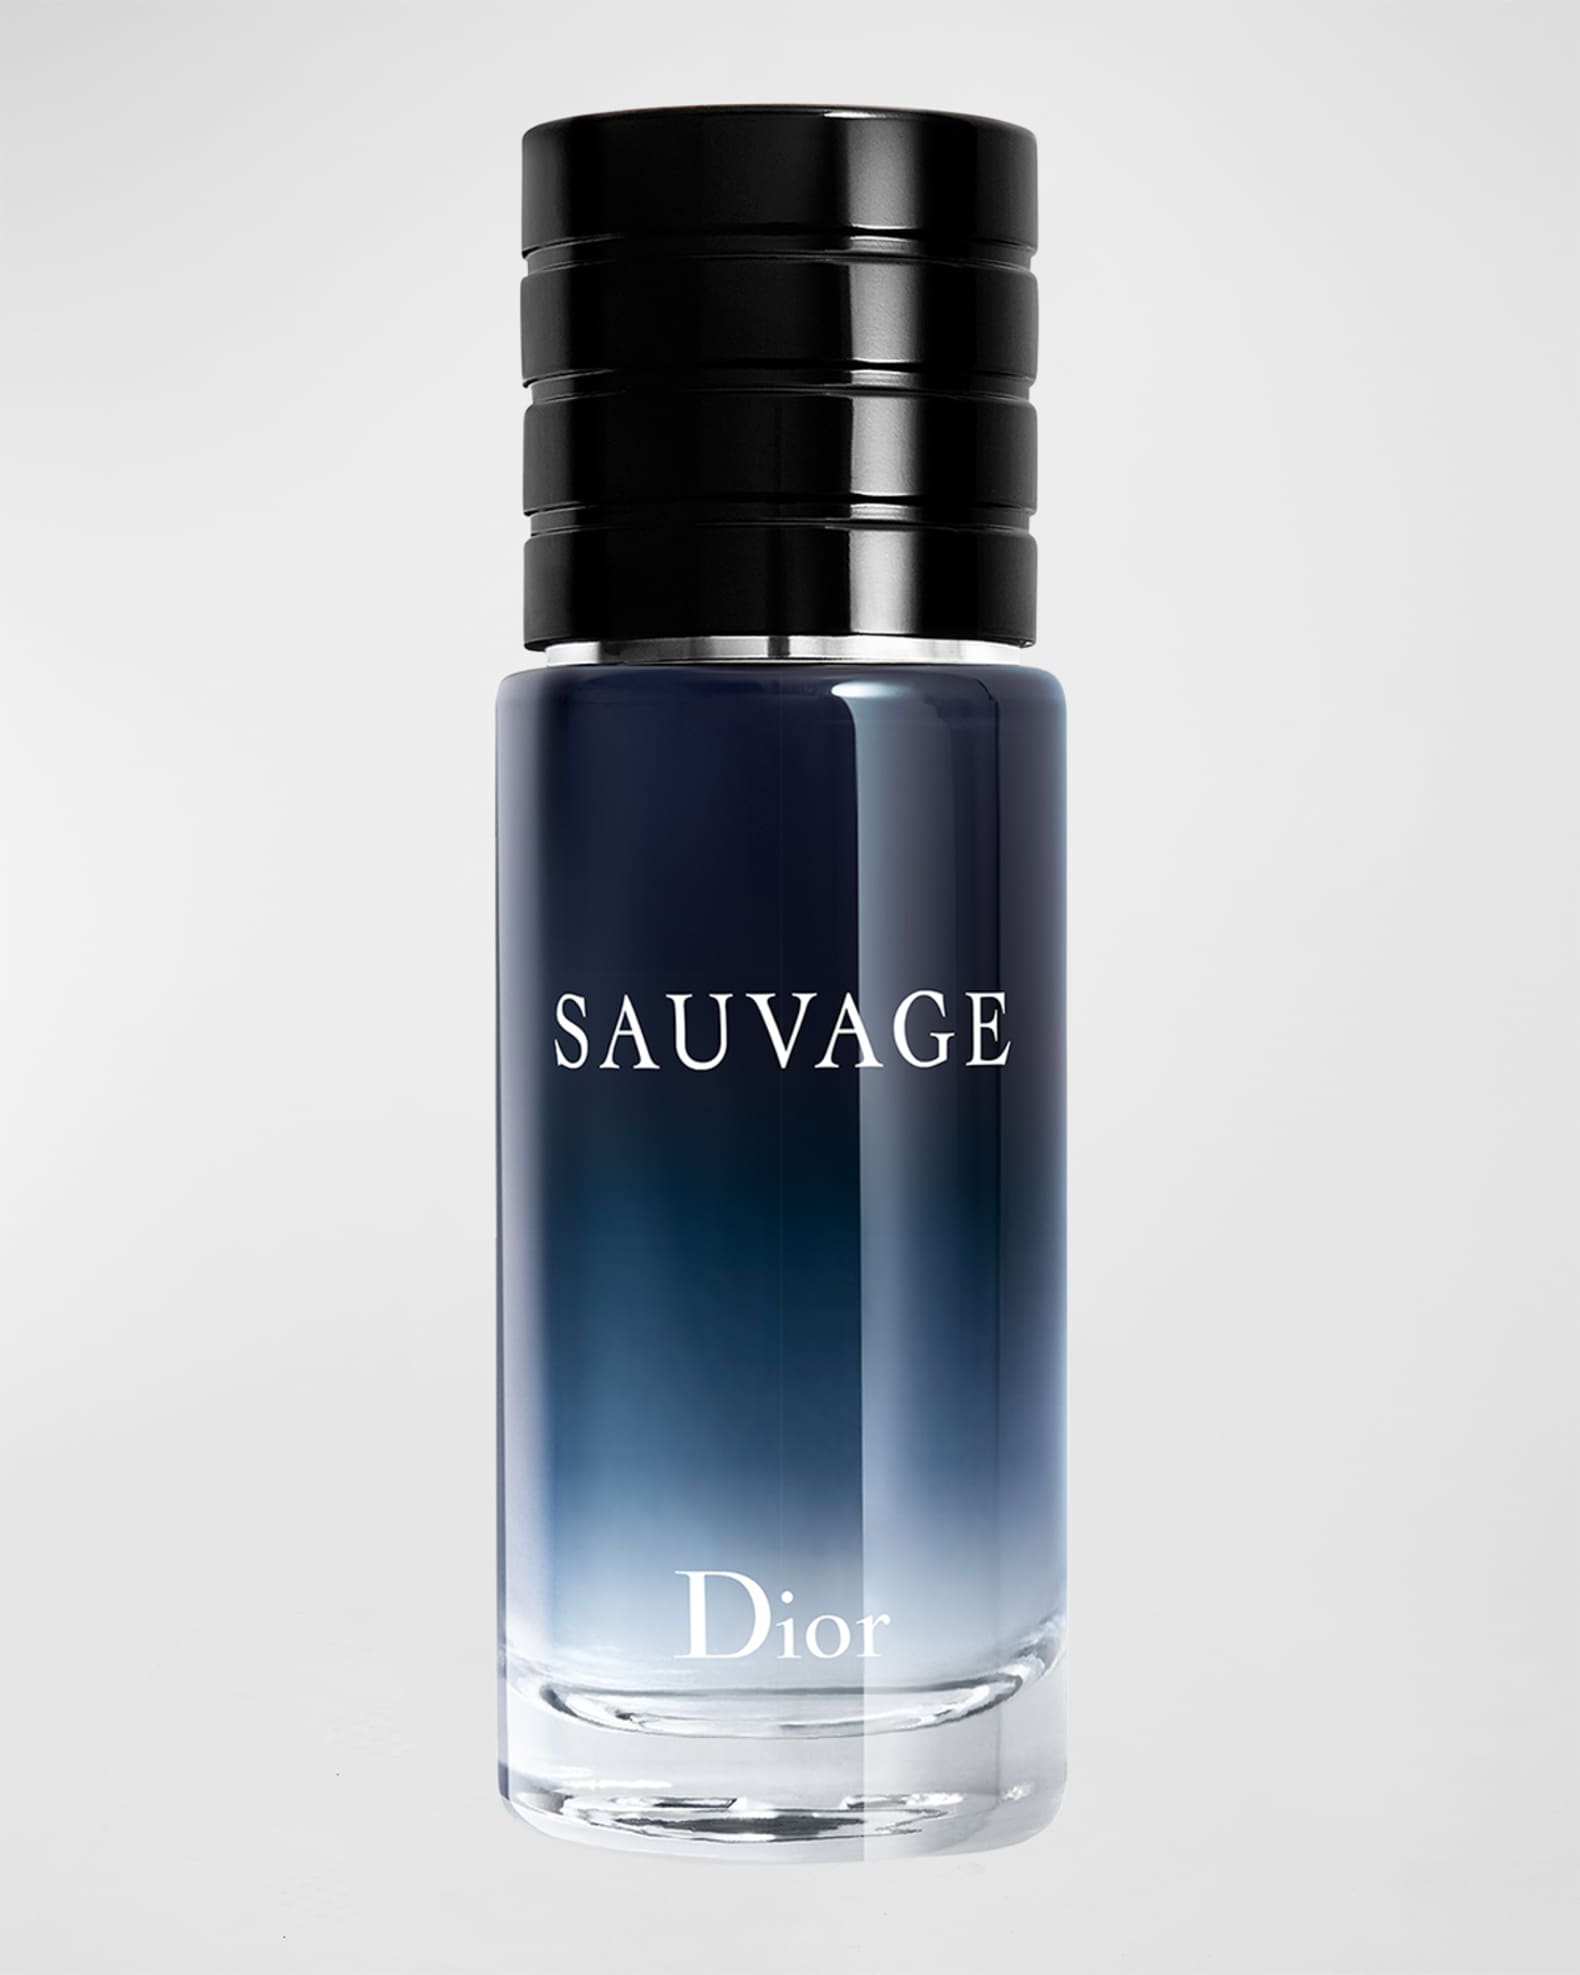 Dior Sauvage Eau de Toilette, 1 oz. | Neiman Marcus